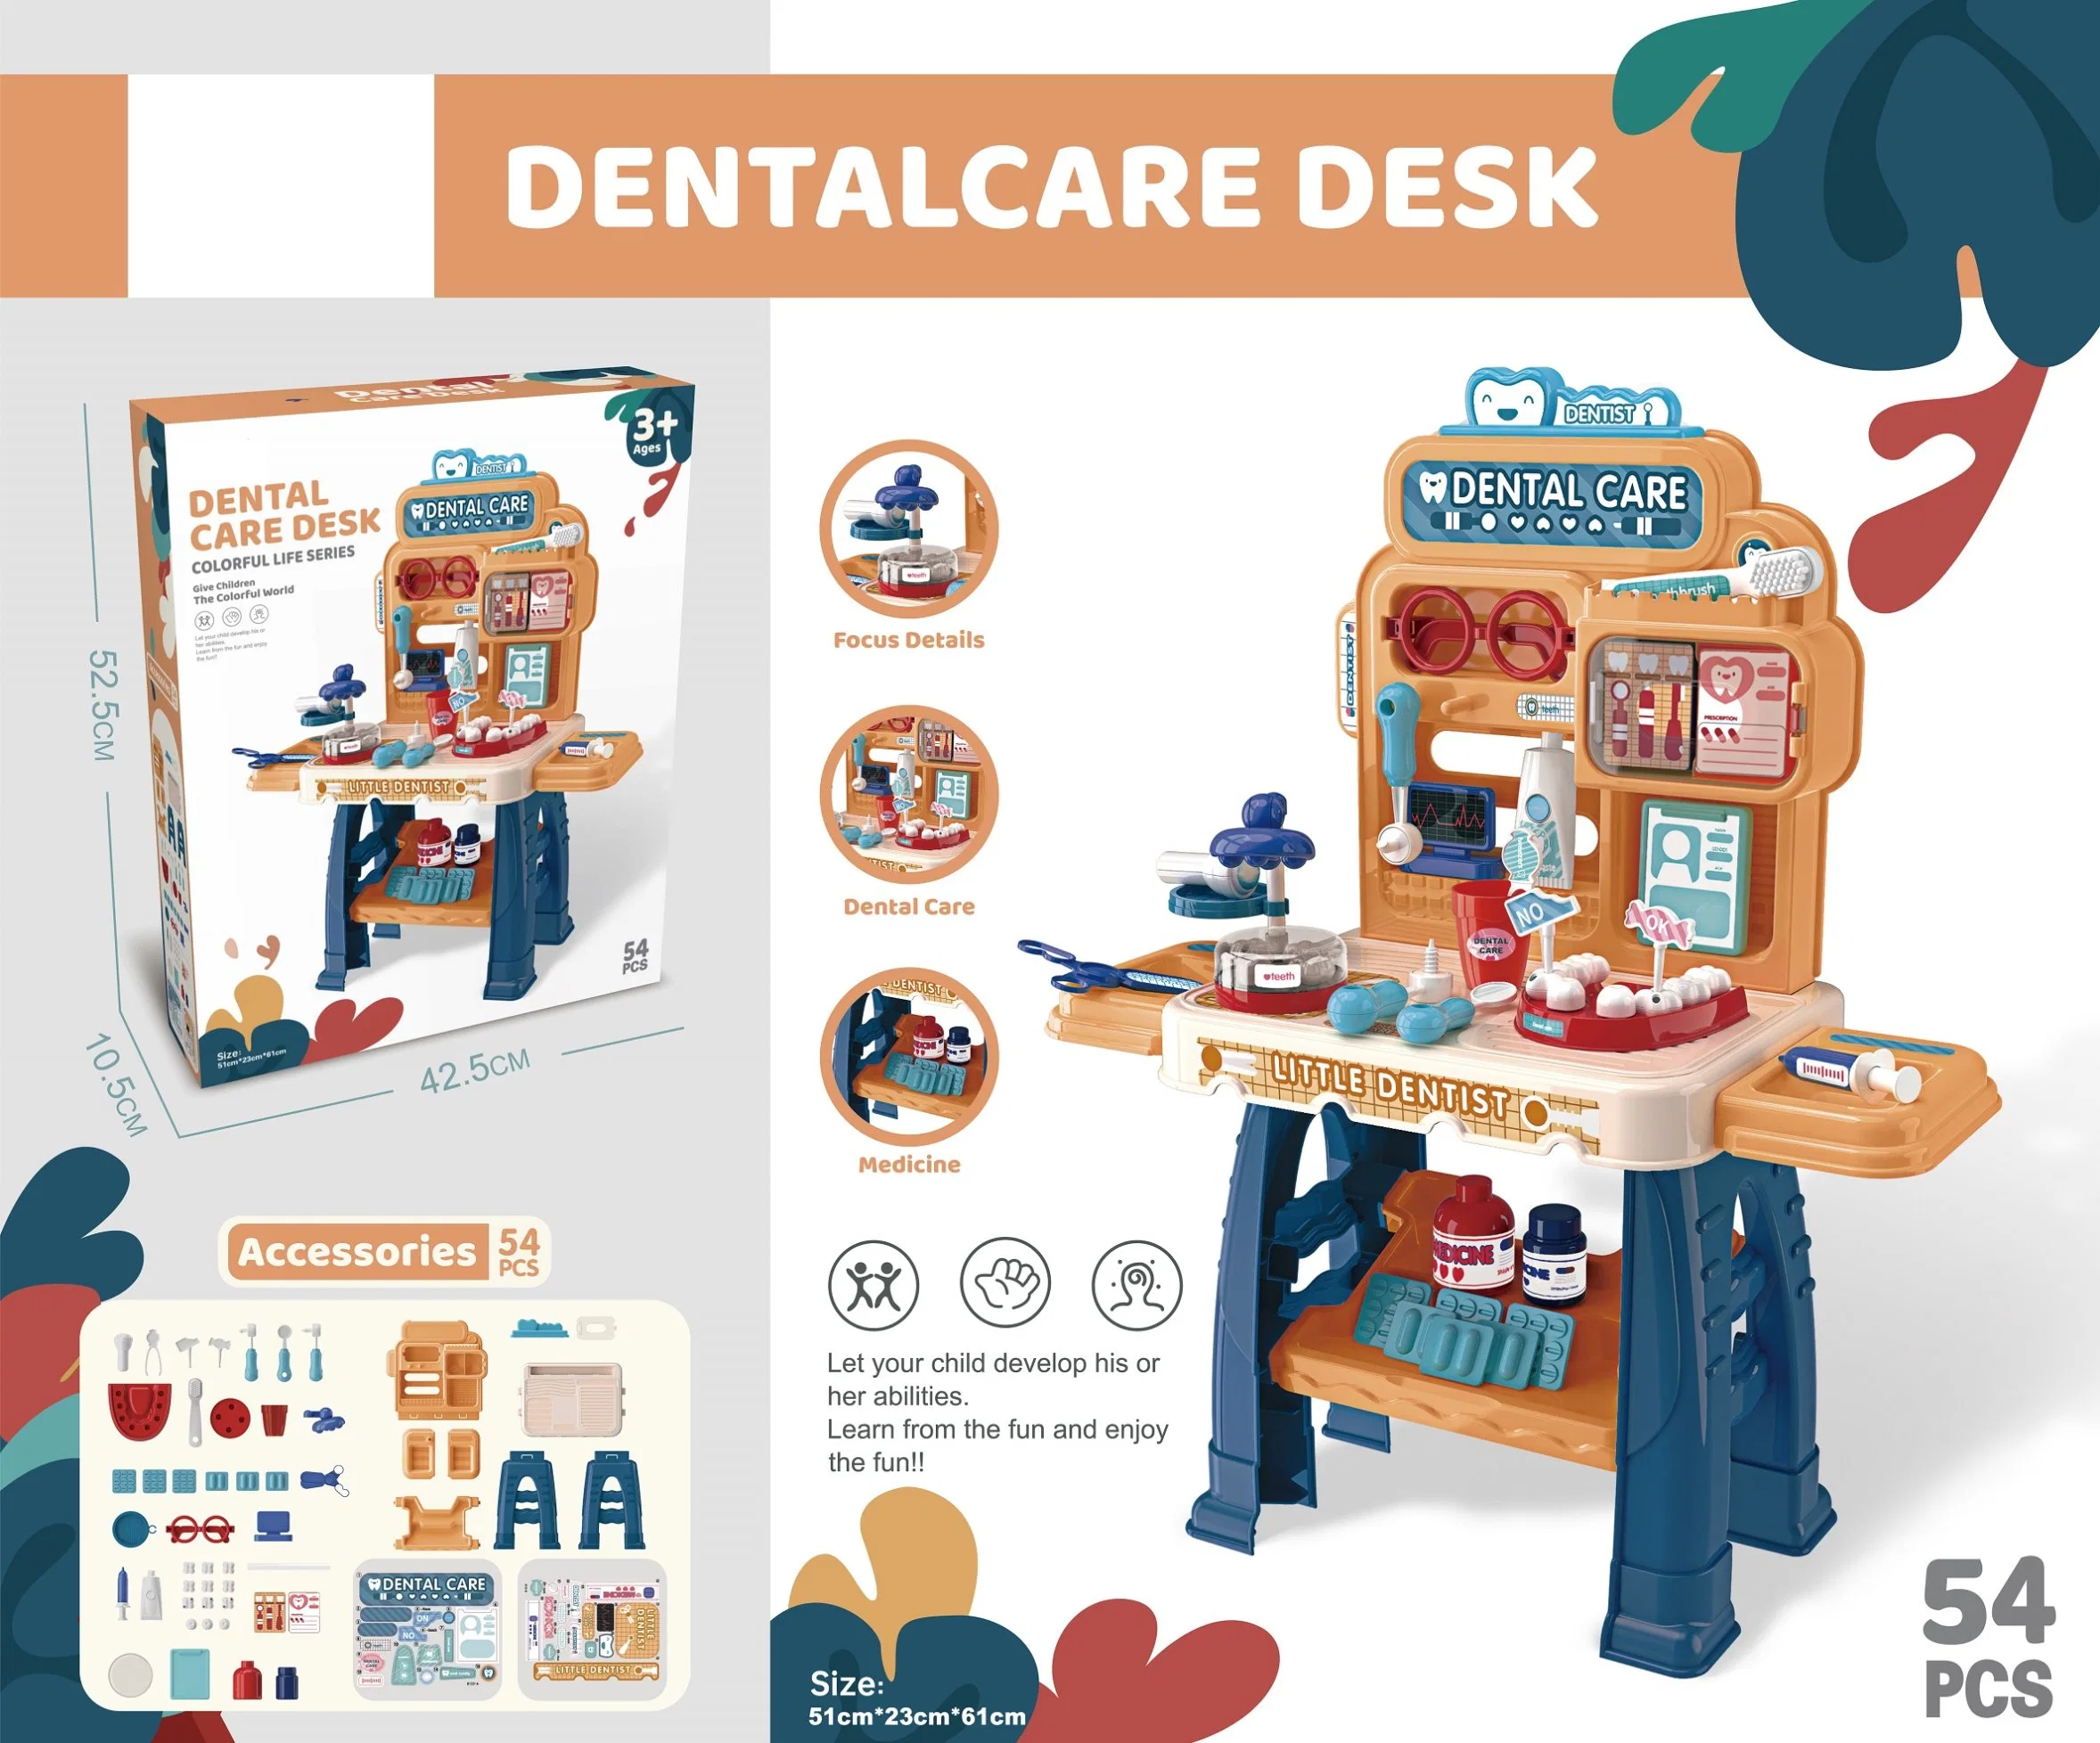 Les soins dentaires Toy jouer Desk